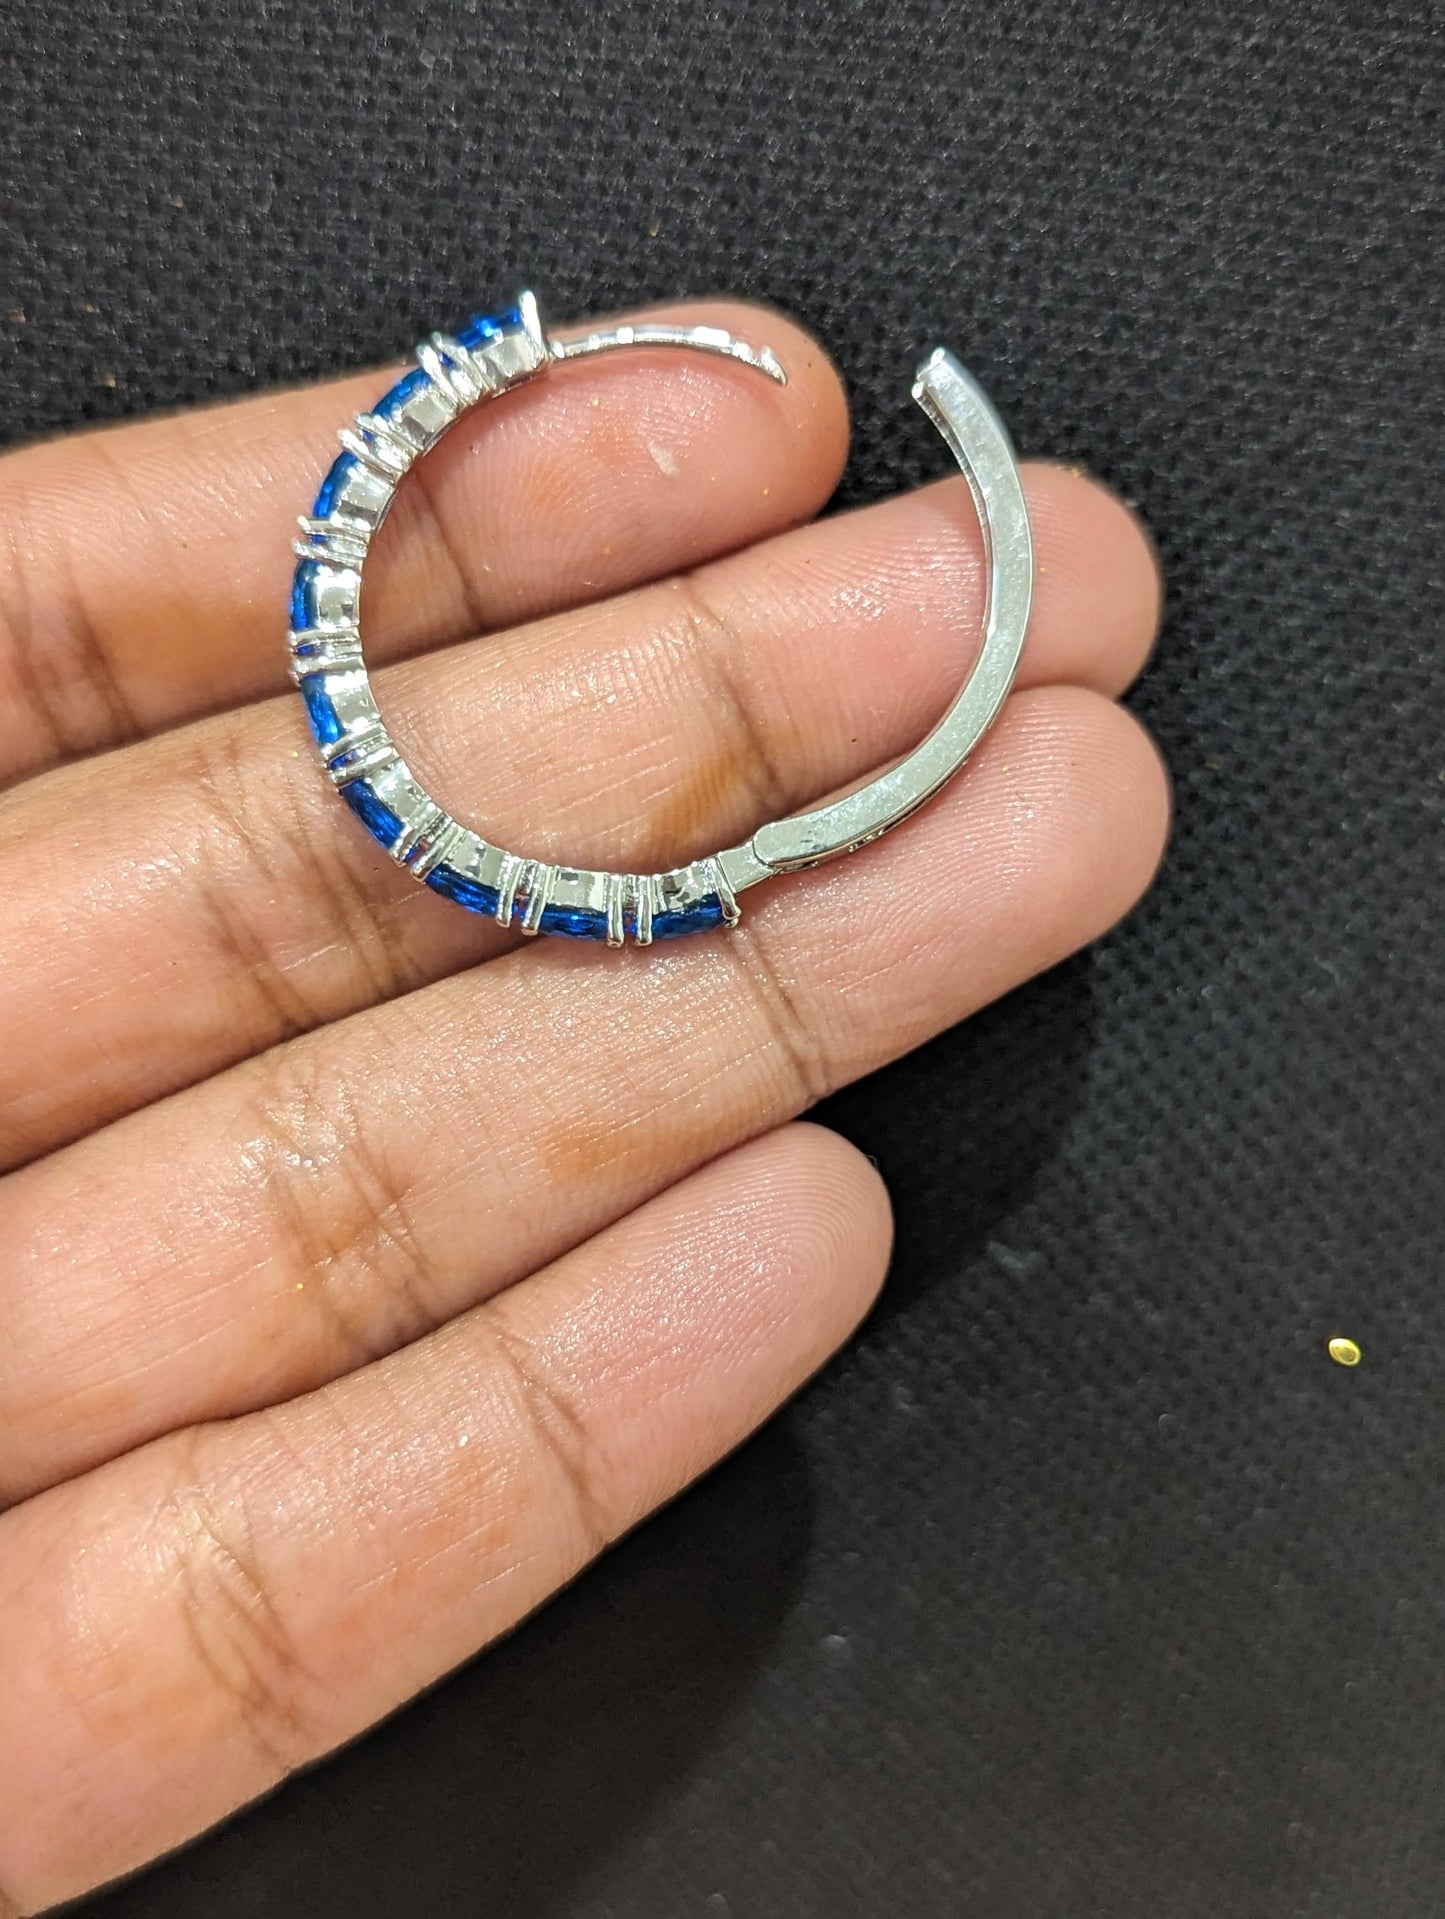 Blue CZ stone medium hoop earrings